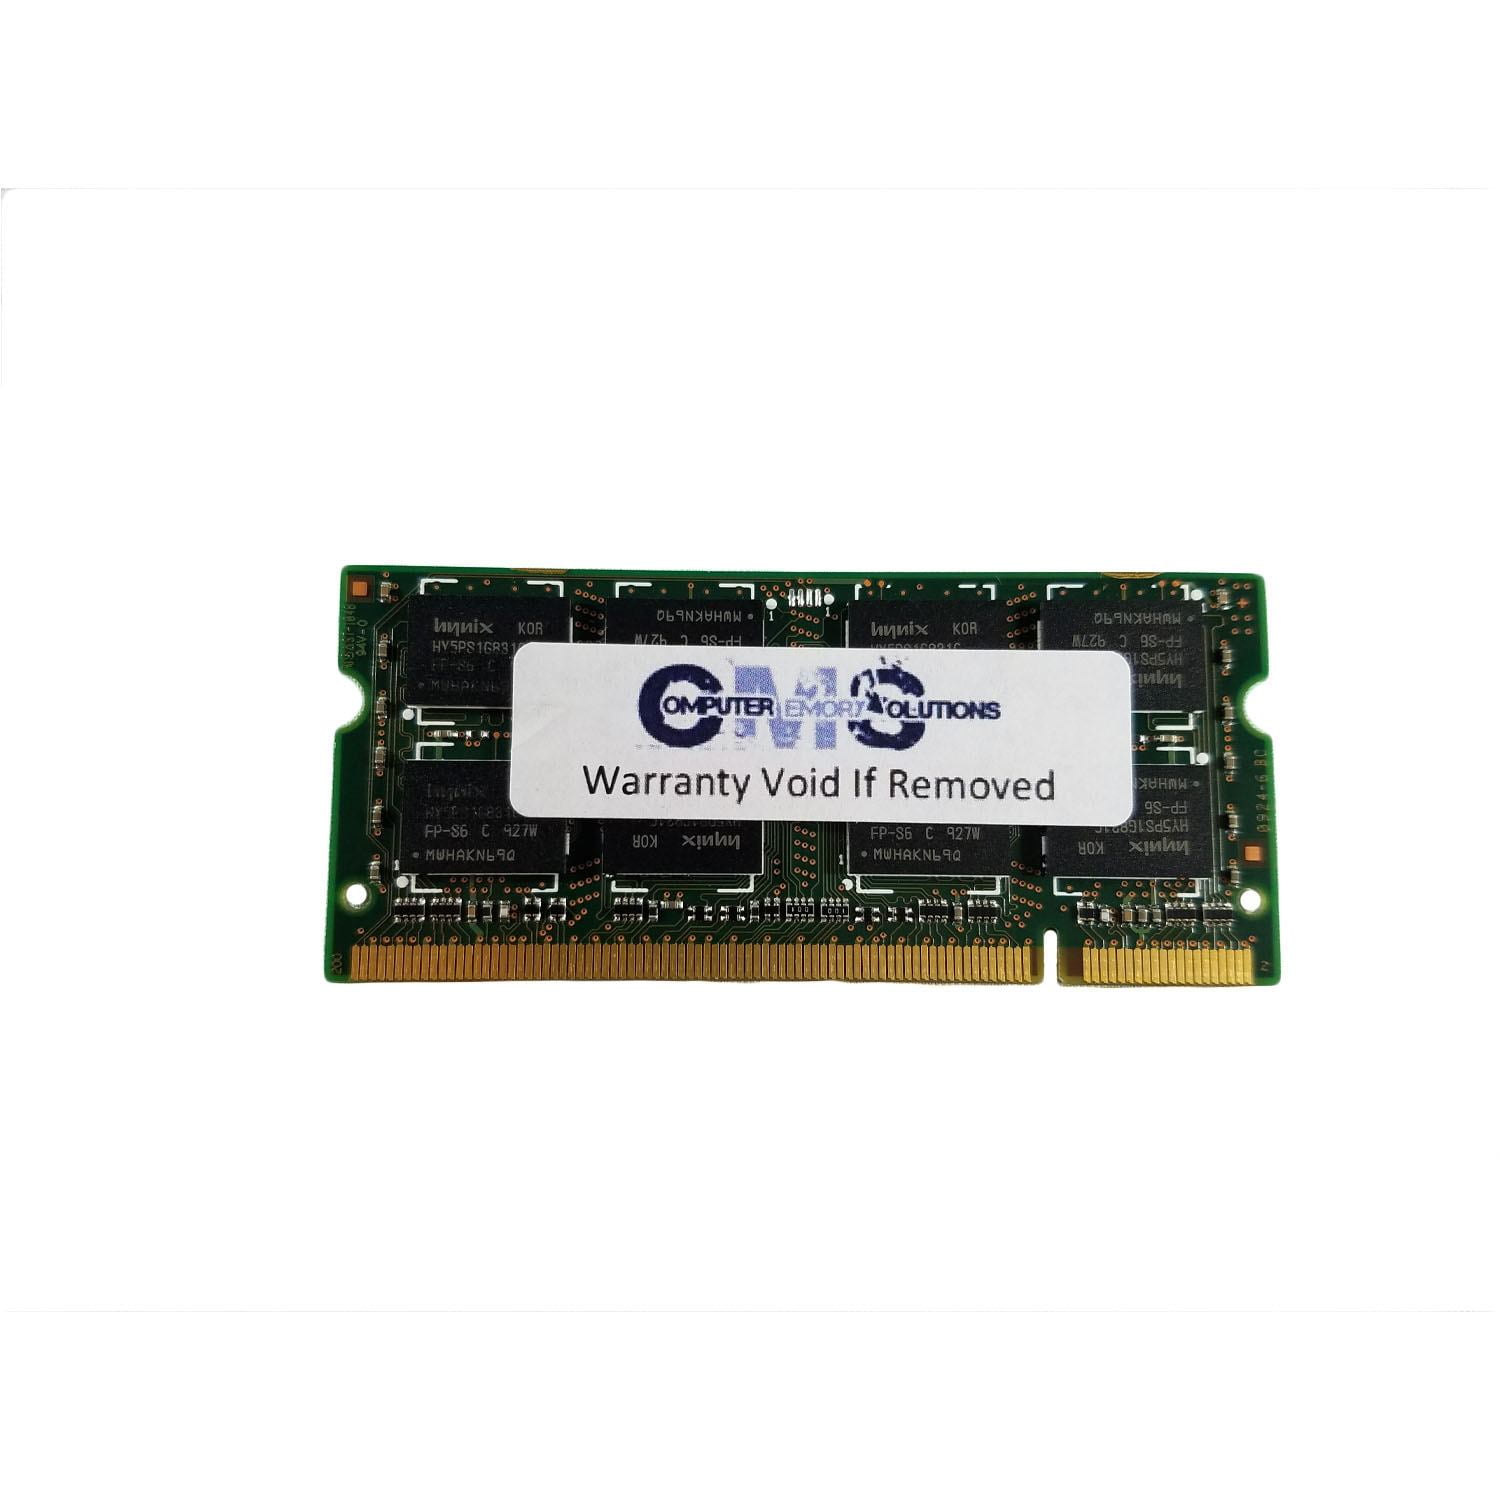 DDR2 800MHz SODIMM PC2-6400 200-Pin Non-ECC Memory Upgrade Module A-Tech 2GB RAM for DELL Latitude D620 ATG